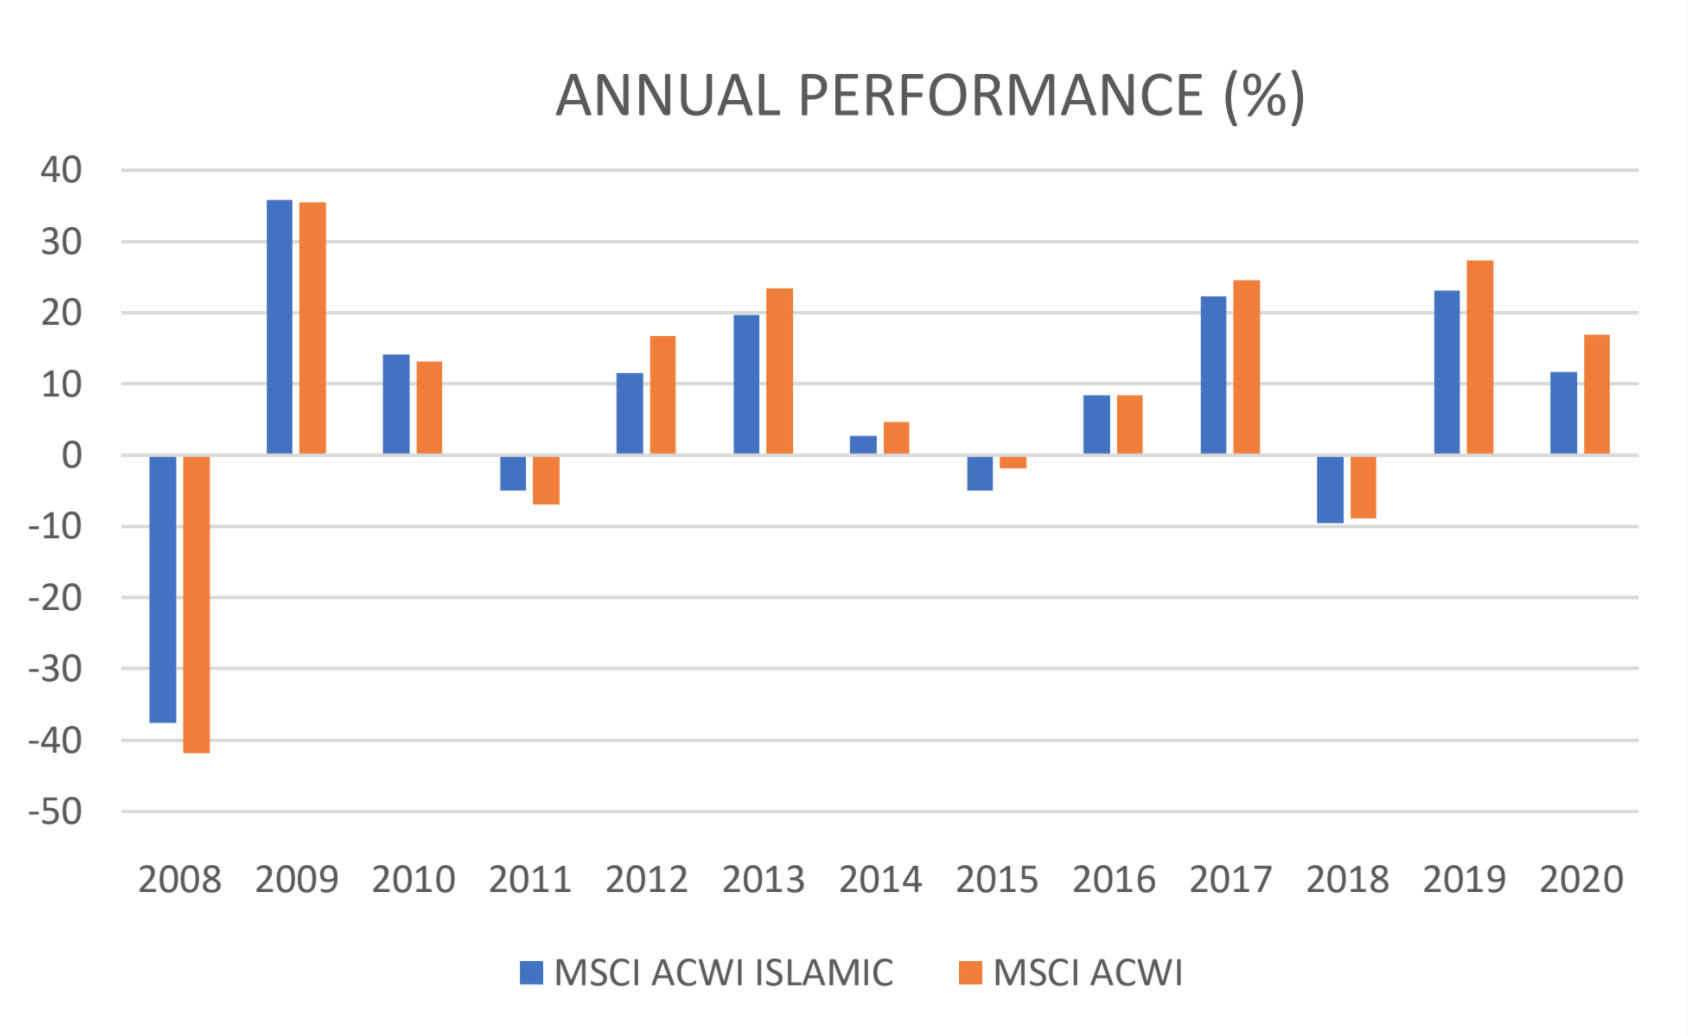 Confronto tra MSCI e MSCI ISLAMIC.
Fonte: rielaborazione propria sui dati forniti da MSCI ACWI (USD).